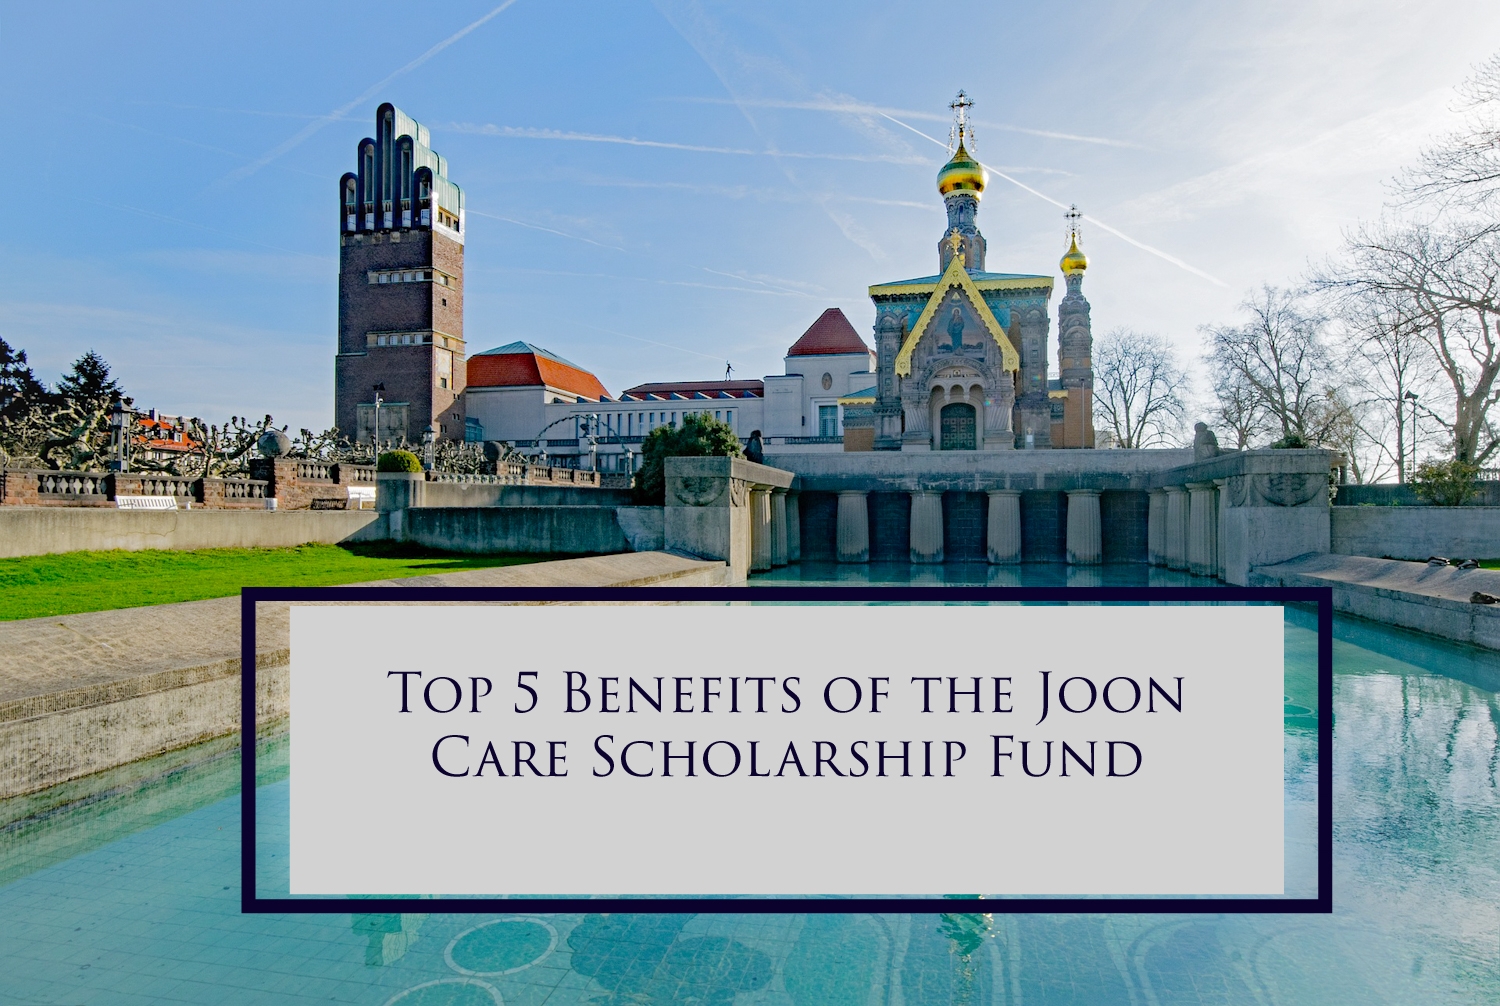  Joon Care Scholarship Fund